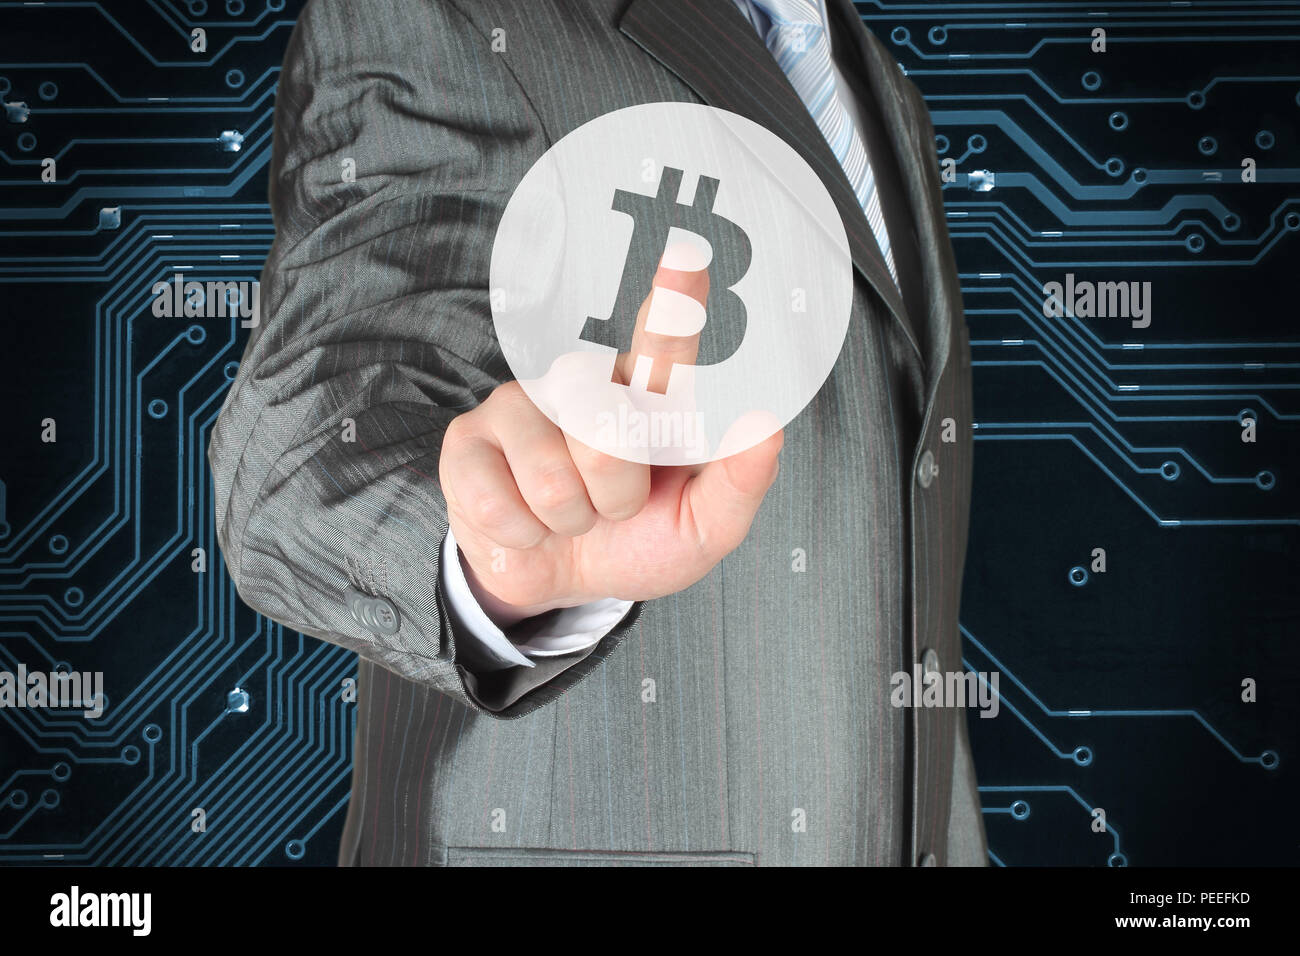 Businessman pushing bouton virtuel avec symbole Bitcoin sur fond numérique Banque D'Images